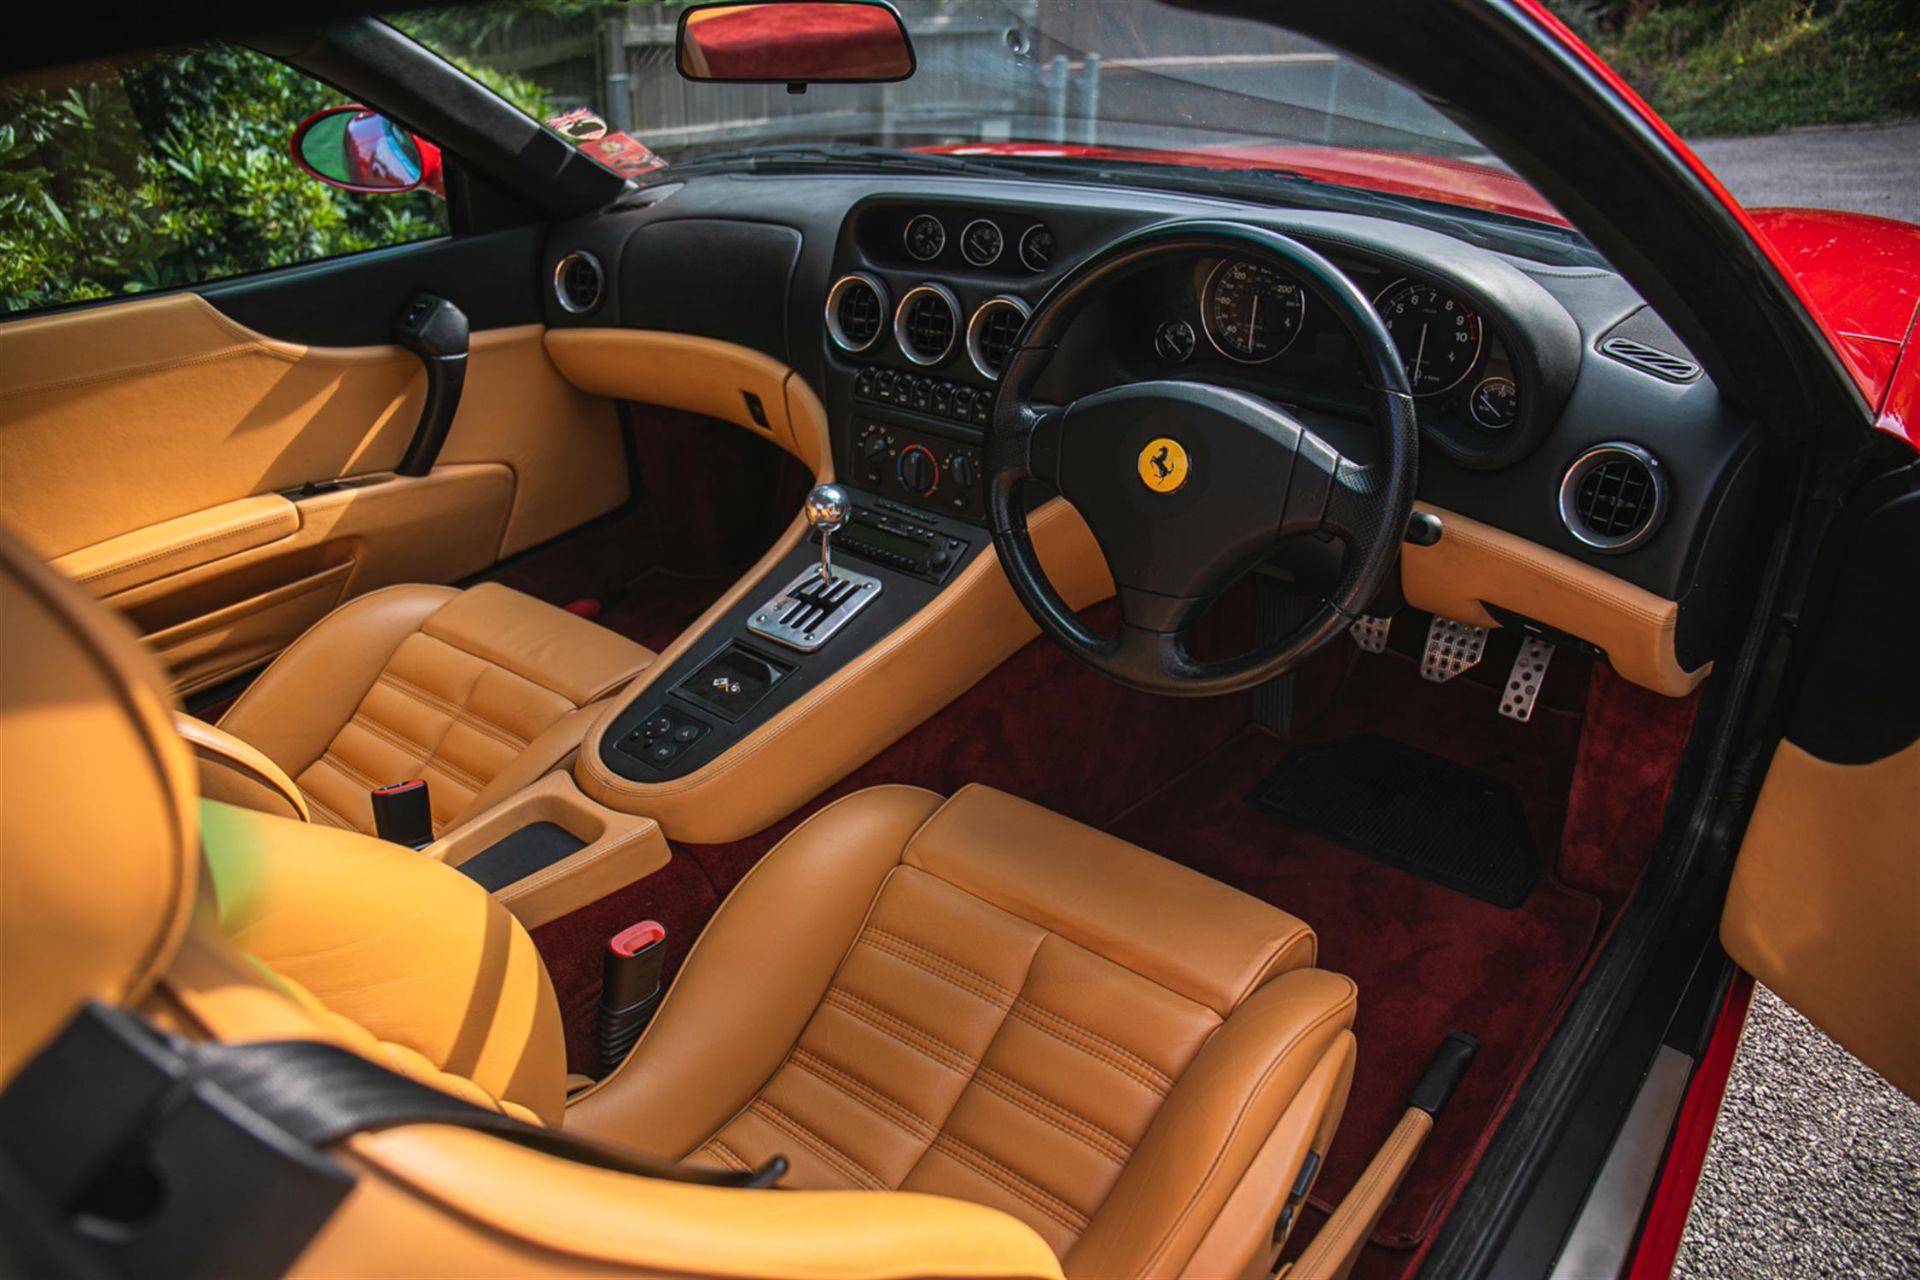 2000 Ferrari 550 Maranello - Image 2 of 10